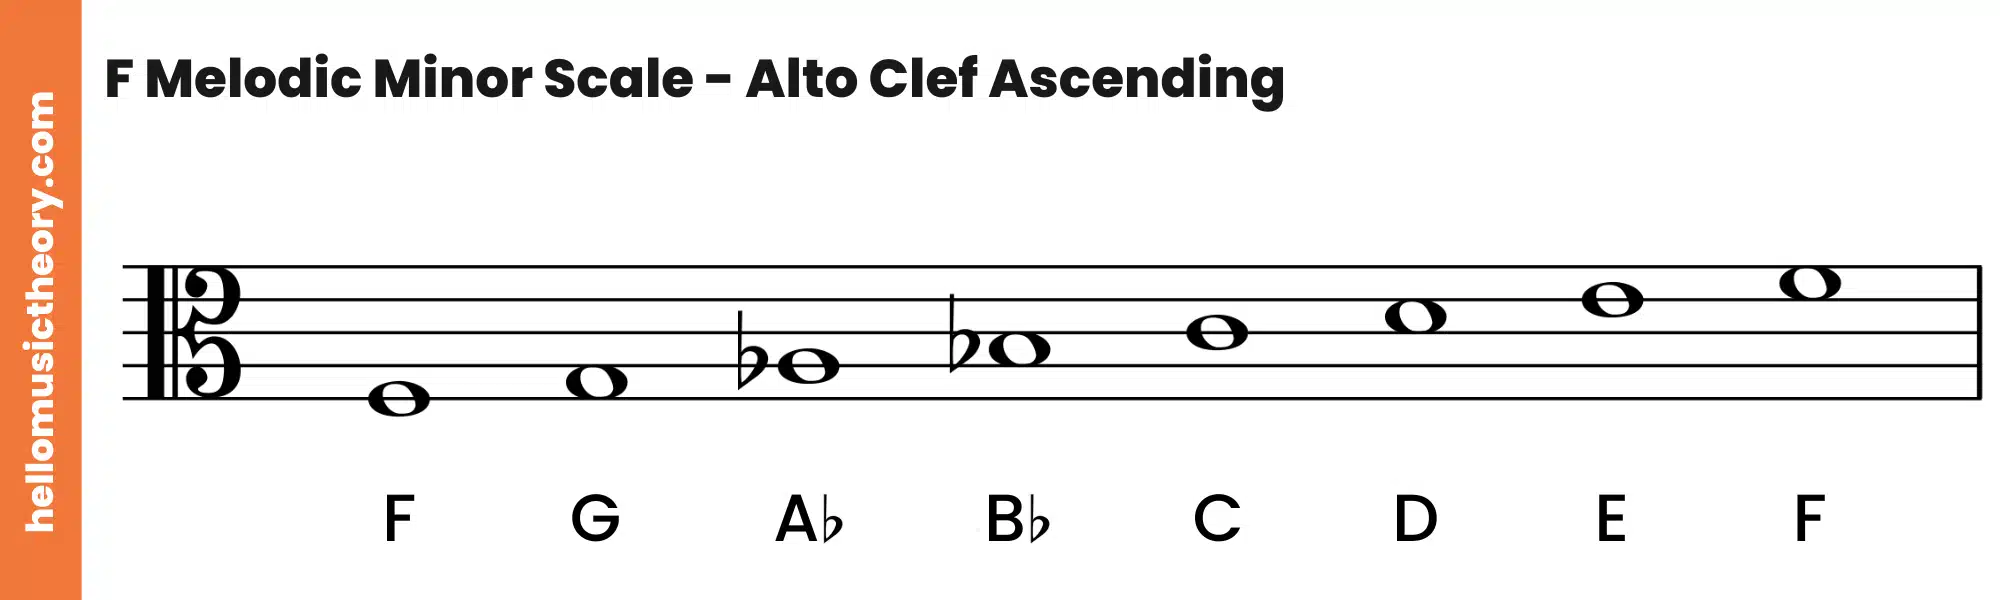 F Melodic Minor Scale Alto Clef Ascending